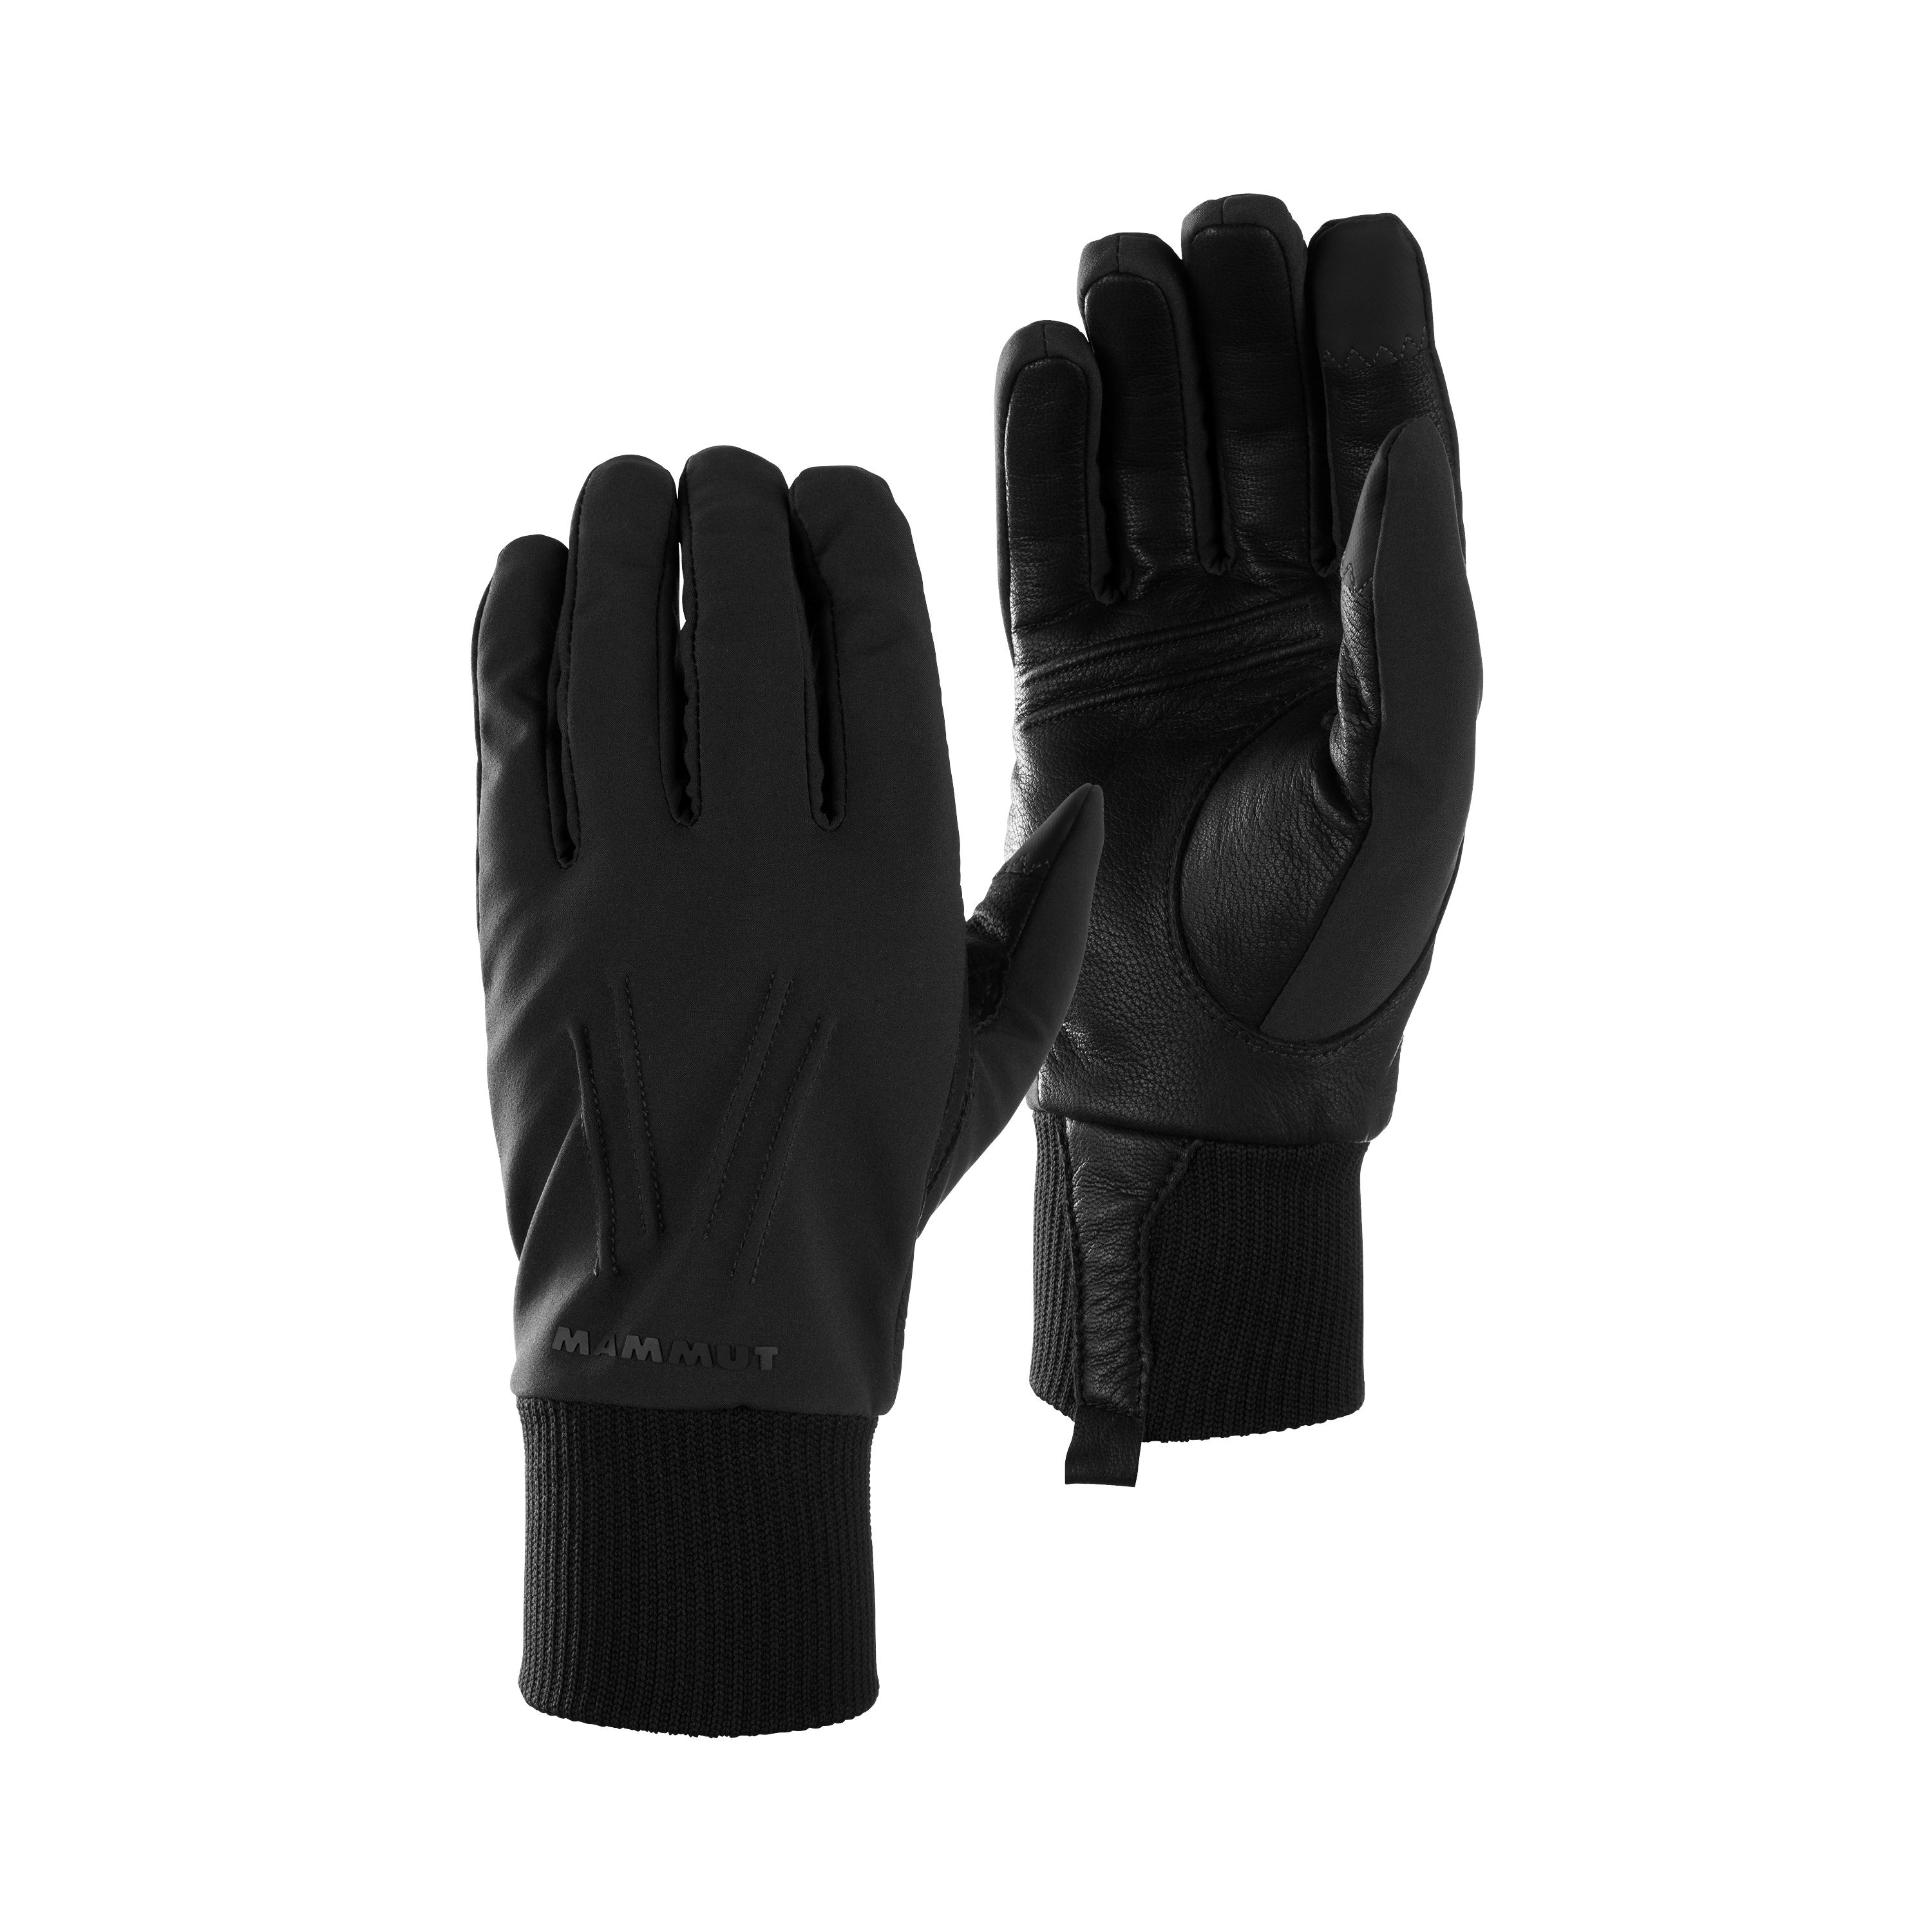 Alvra Glove